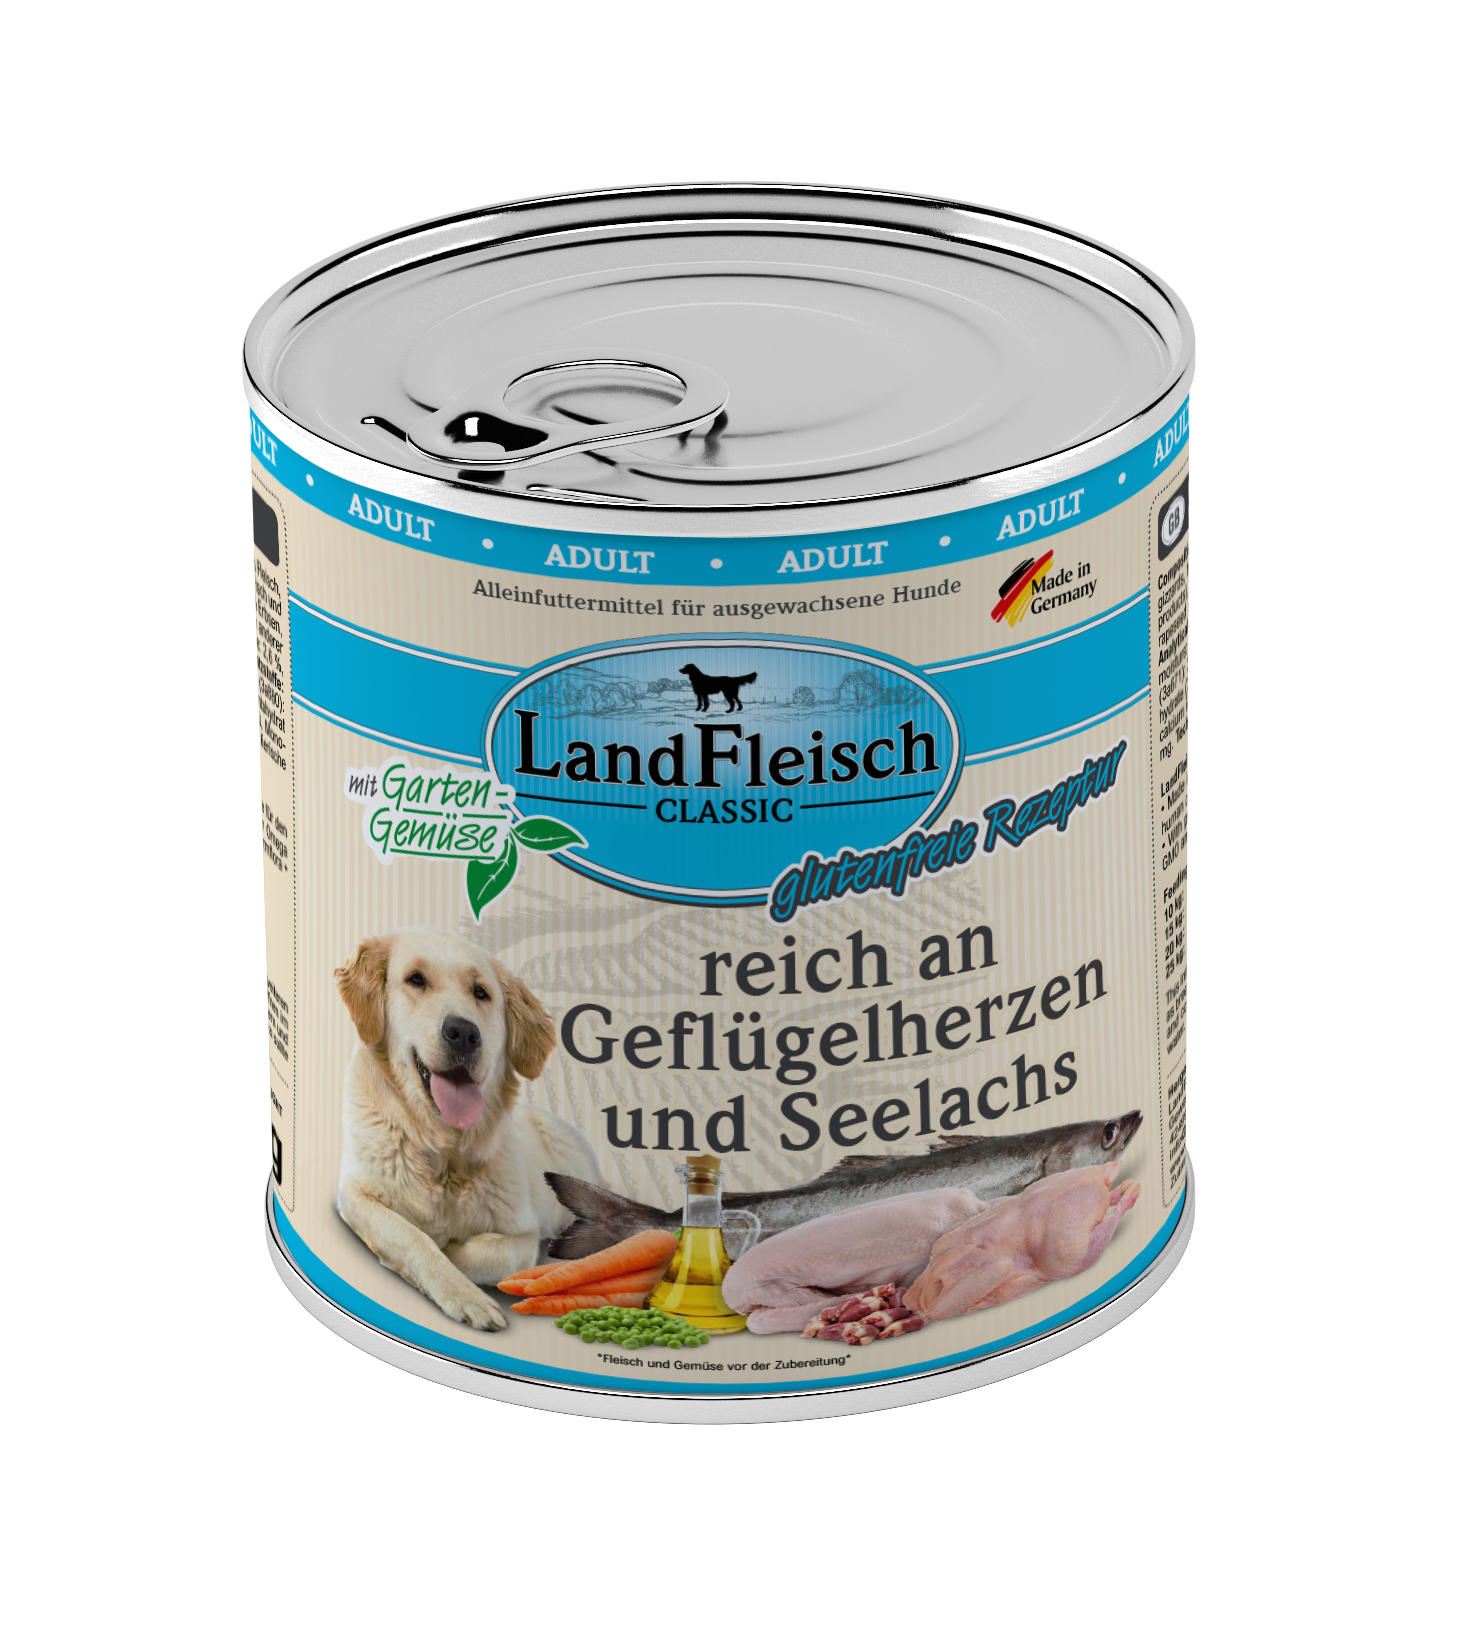 LandFleisch Dog Classic Geflügelherzen und Seelachs mit Gartengemüse 800g